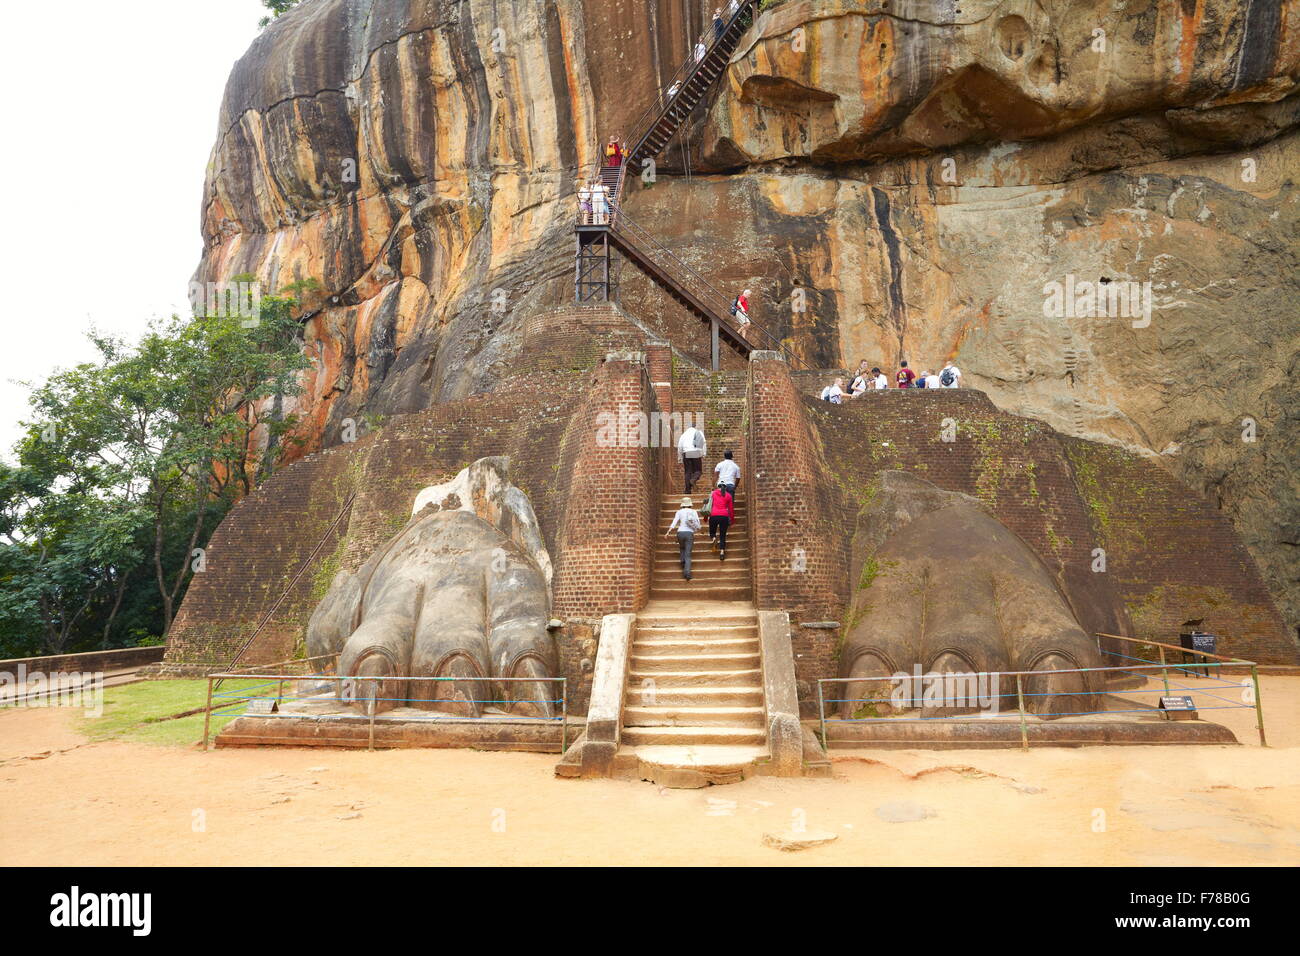 Sri Lanka - Sigiriya, Lion's Gate, ancienne forteresse, Site du patrimoine mondial de l'UNESCO Banque D'Images